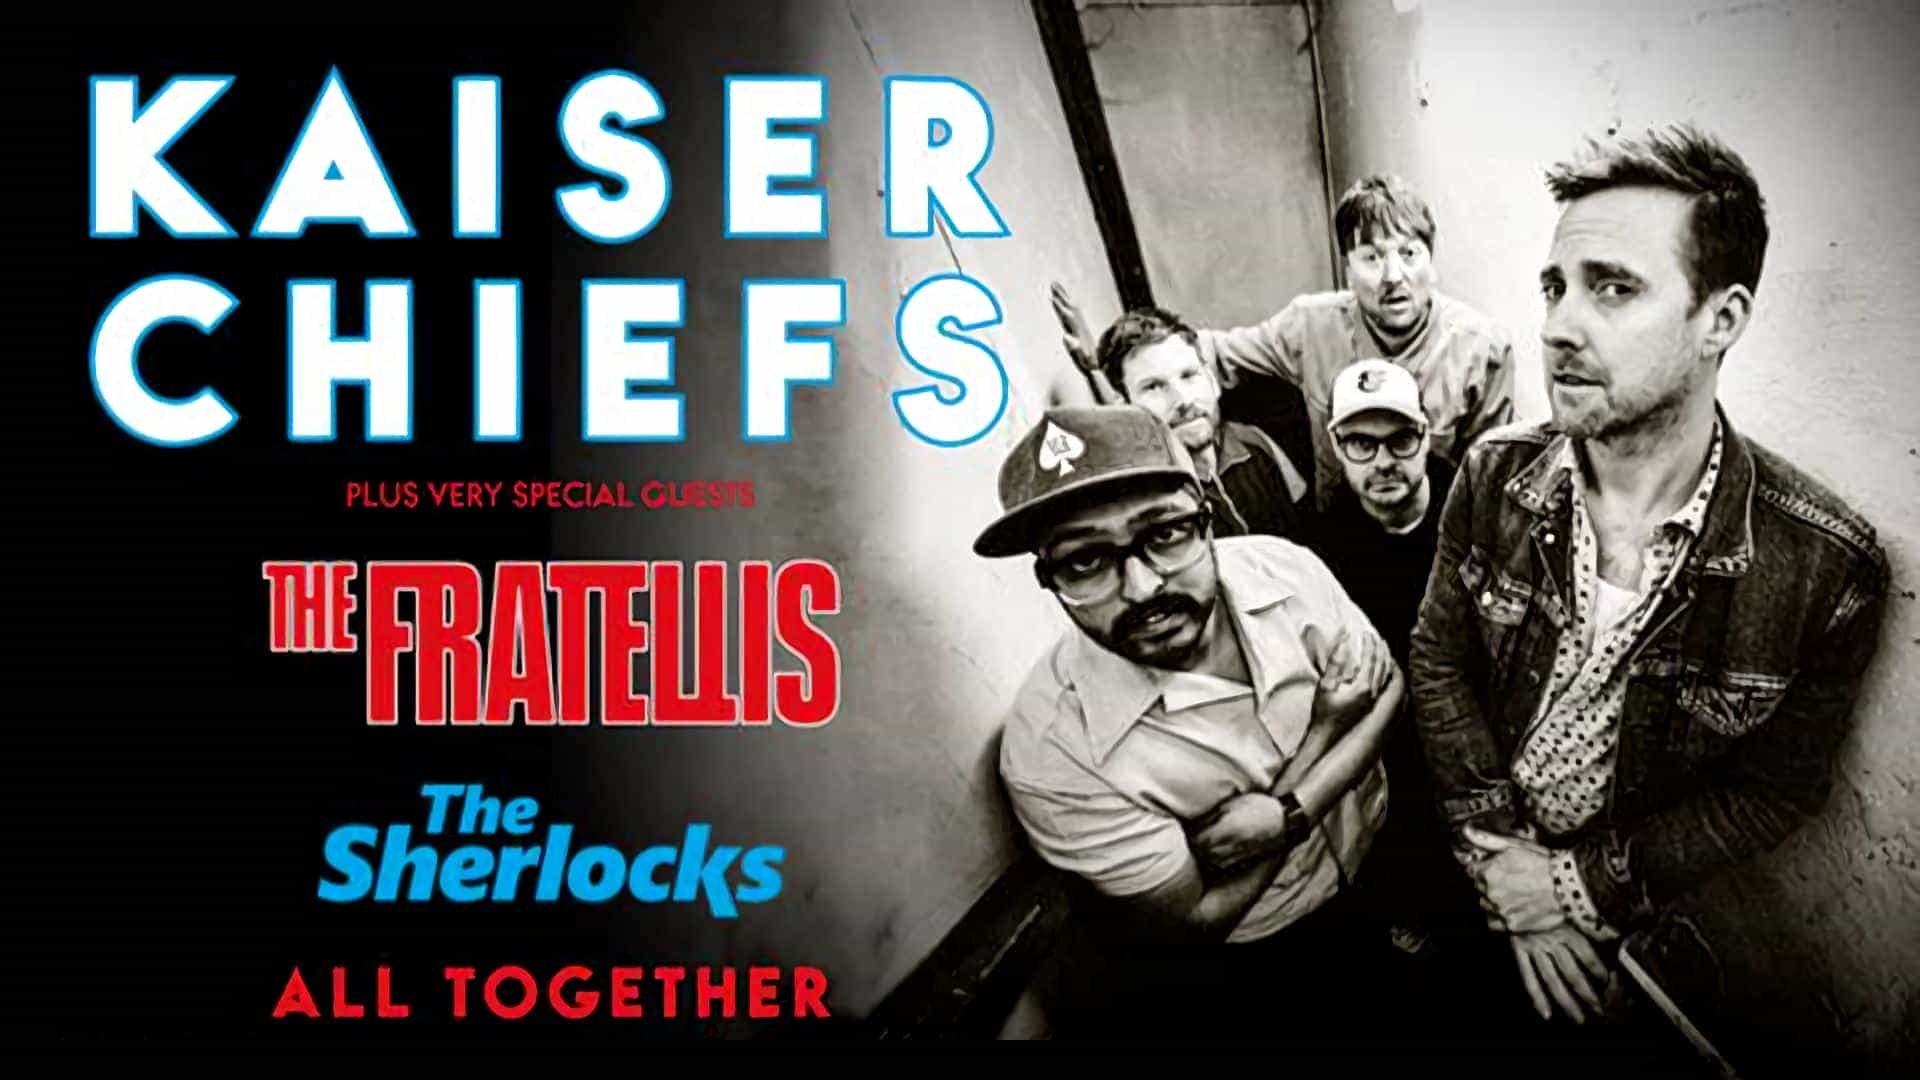 Kaiser Chiefs + The Fratellis + The Sherlocks